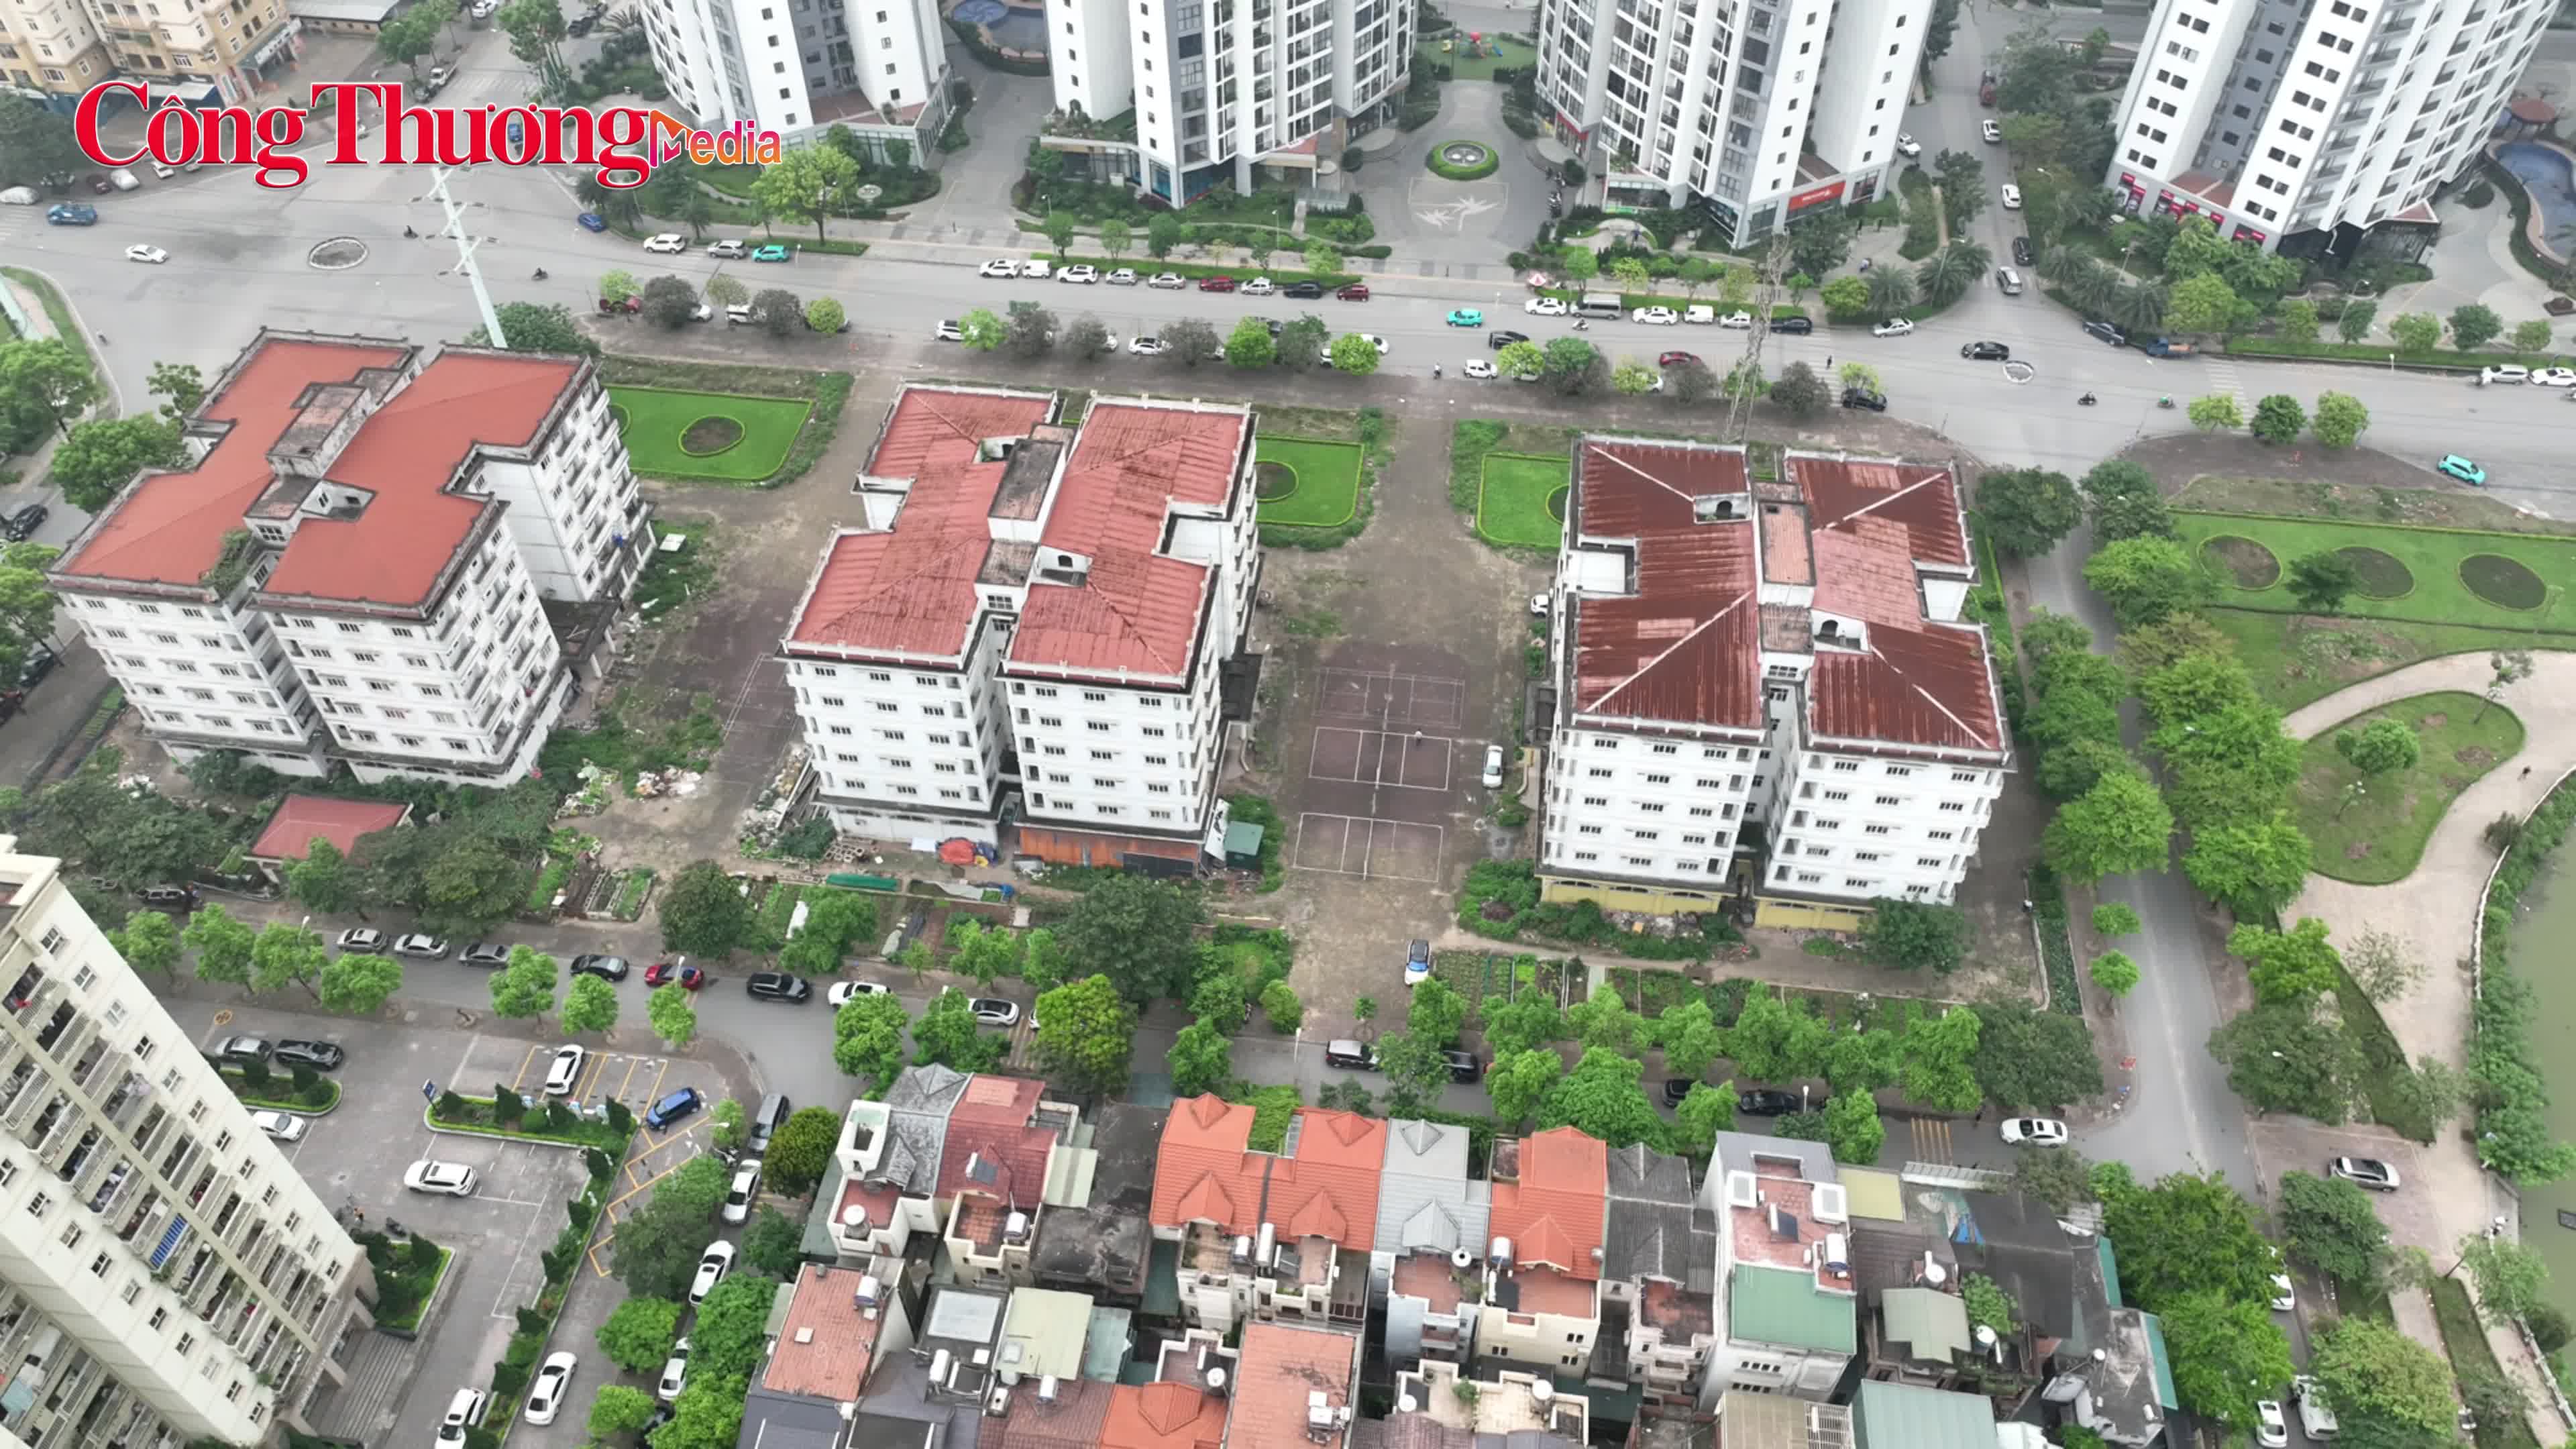 Xót xa hàng trăm căn hộ tái định cư bỏ hoang trên "đất vàng" Hà Nội